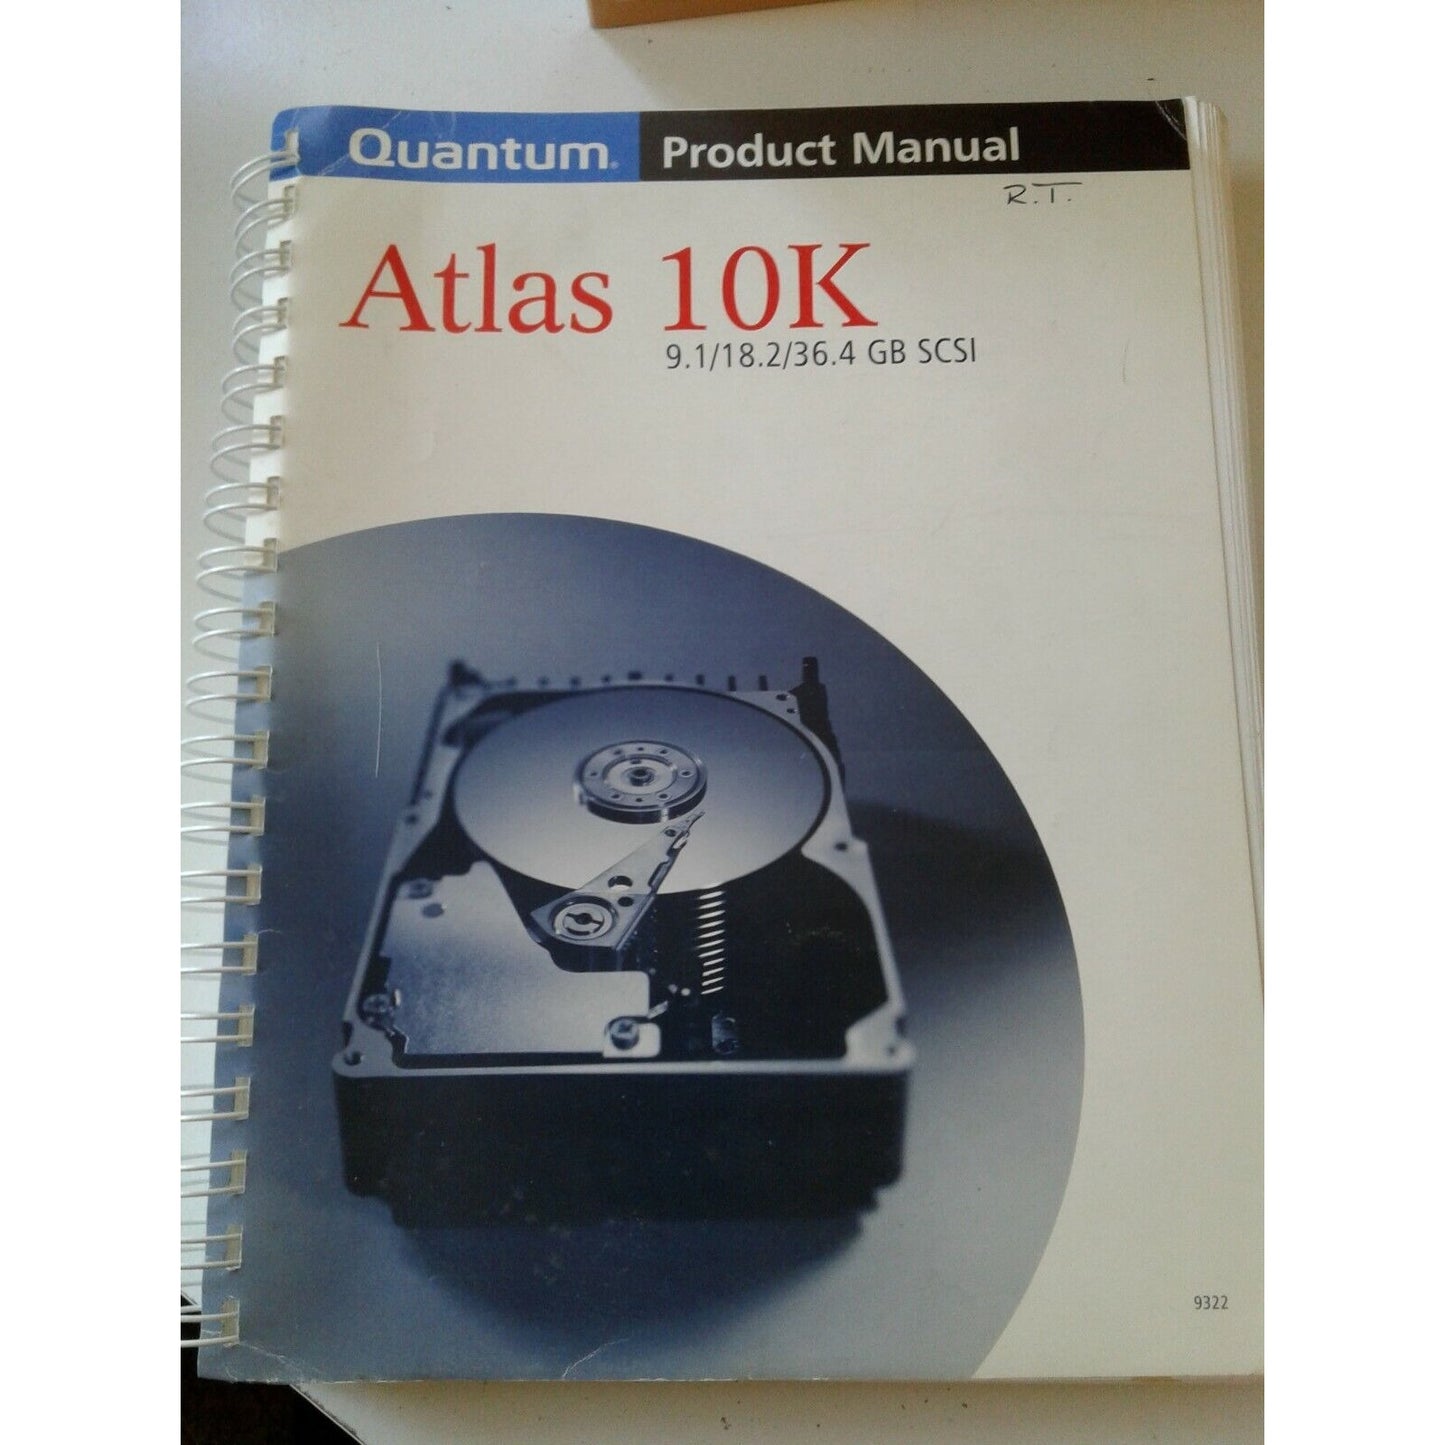 Quantum Product Manual Atlas 10K 9.1 / 18.2 / 36.4 GB SCSI